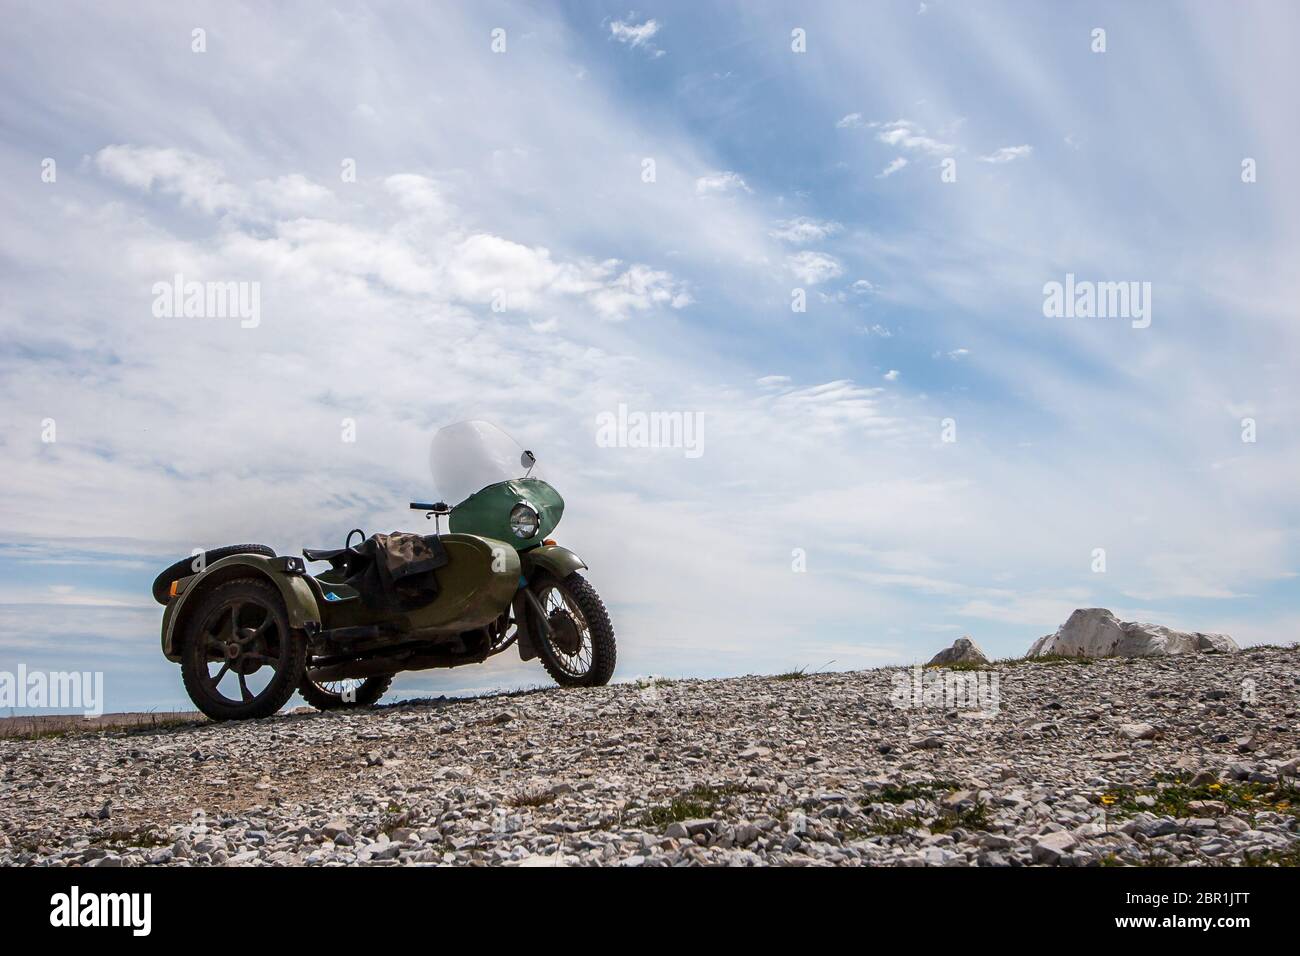 Ein altes sowjetisches Motorrad mit Seitenwagen steht gegen den Himmel mit Wolken auf den Steinen. Grüne Farbe. Windschutzscheibe und runder Scheinwerfer. Horizontal. Stockfoto